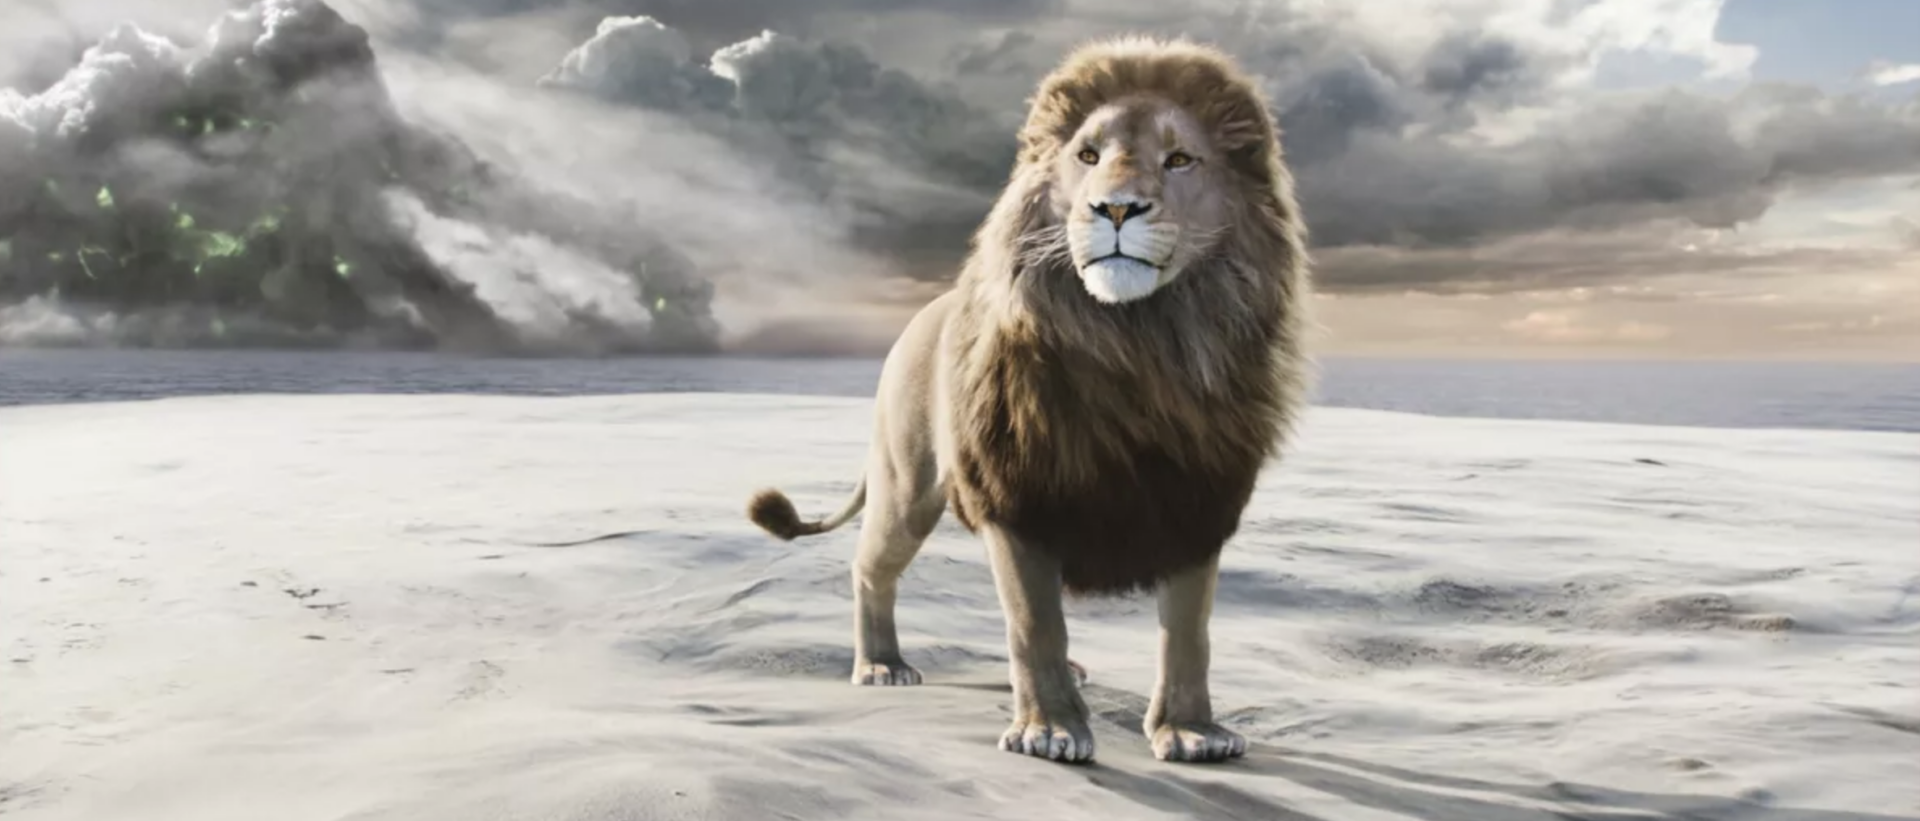 Le lion Aslan est la principale figure christique dans Le Monde de Narnia, de C.S. Lewis | The Kobal Collection/Aurimages